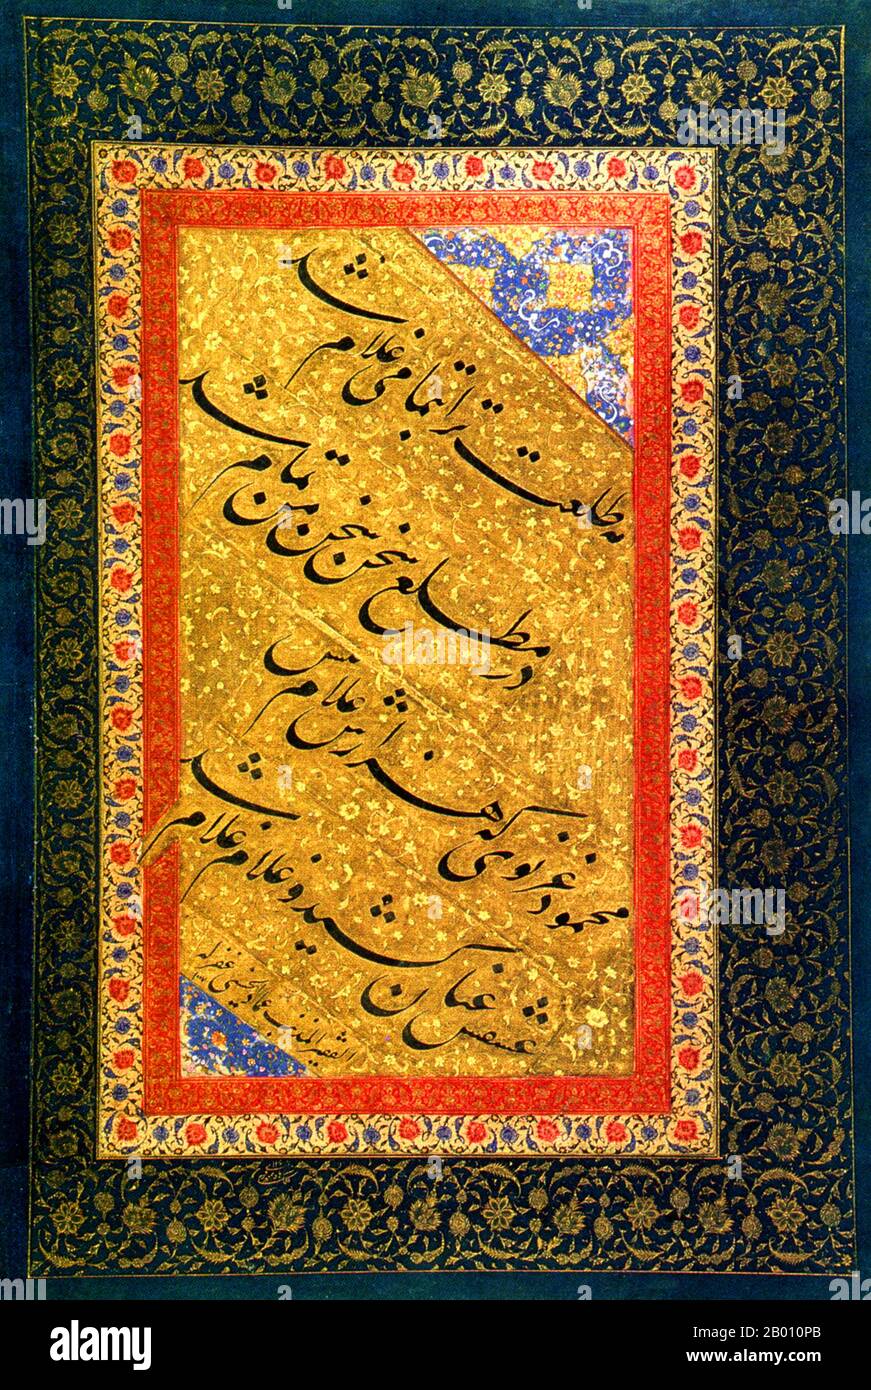 Iran: Ein Quatrain, oder Gedicht, aus einem persischen Muraqqa aus den Jahren 1598-1599. A Muraqqa ist ein Album mit Kunstwerken, die im 16th. Jahrhundert in den Safaviden, Moguln und Osmanischen Reichen vorherrschten. Das Muraqqa Album besteht aus Zusammenstellungen verschiedener bildender Künste, darunter islamische Kalligraphie, osmanische Miniaturen, Gemälde, Zeichnungen, ghazalen und persische Poesie. Die Seiten dieser Art von illuminierten Manuskripten haben in der Regel geschmückte Ränder. Die herrschende Elite dieser Zeit war begeistert, diese Art von Alben zu sammeln und zu kompilieren, manchmal Änderungen an bestehenden Muraqqas vorzunehmen. Stockfoto